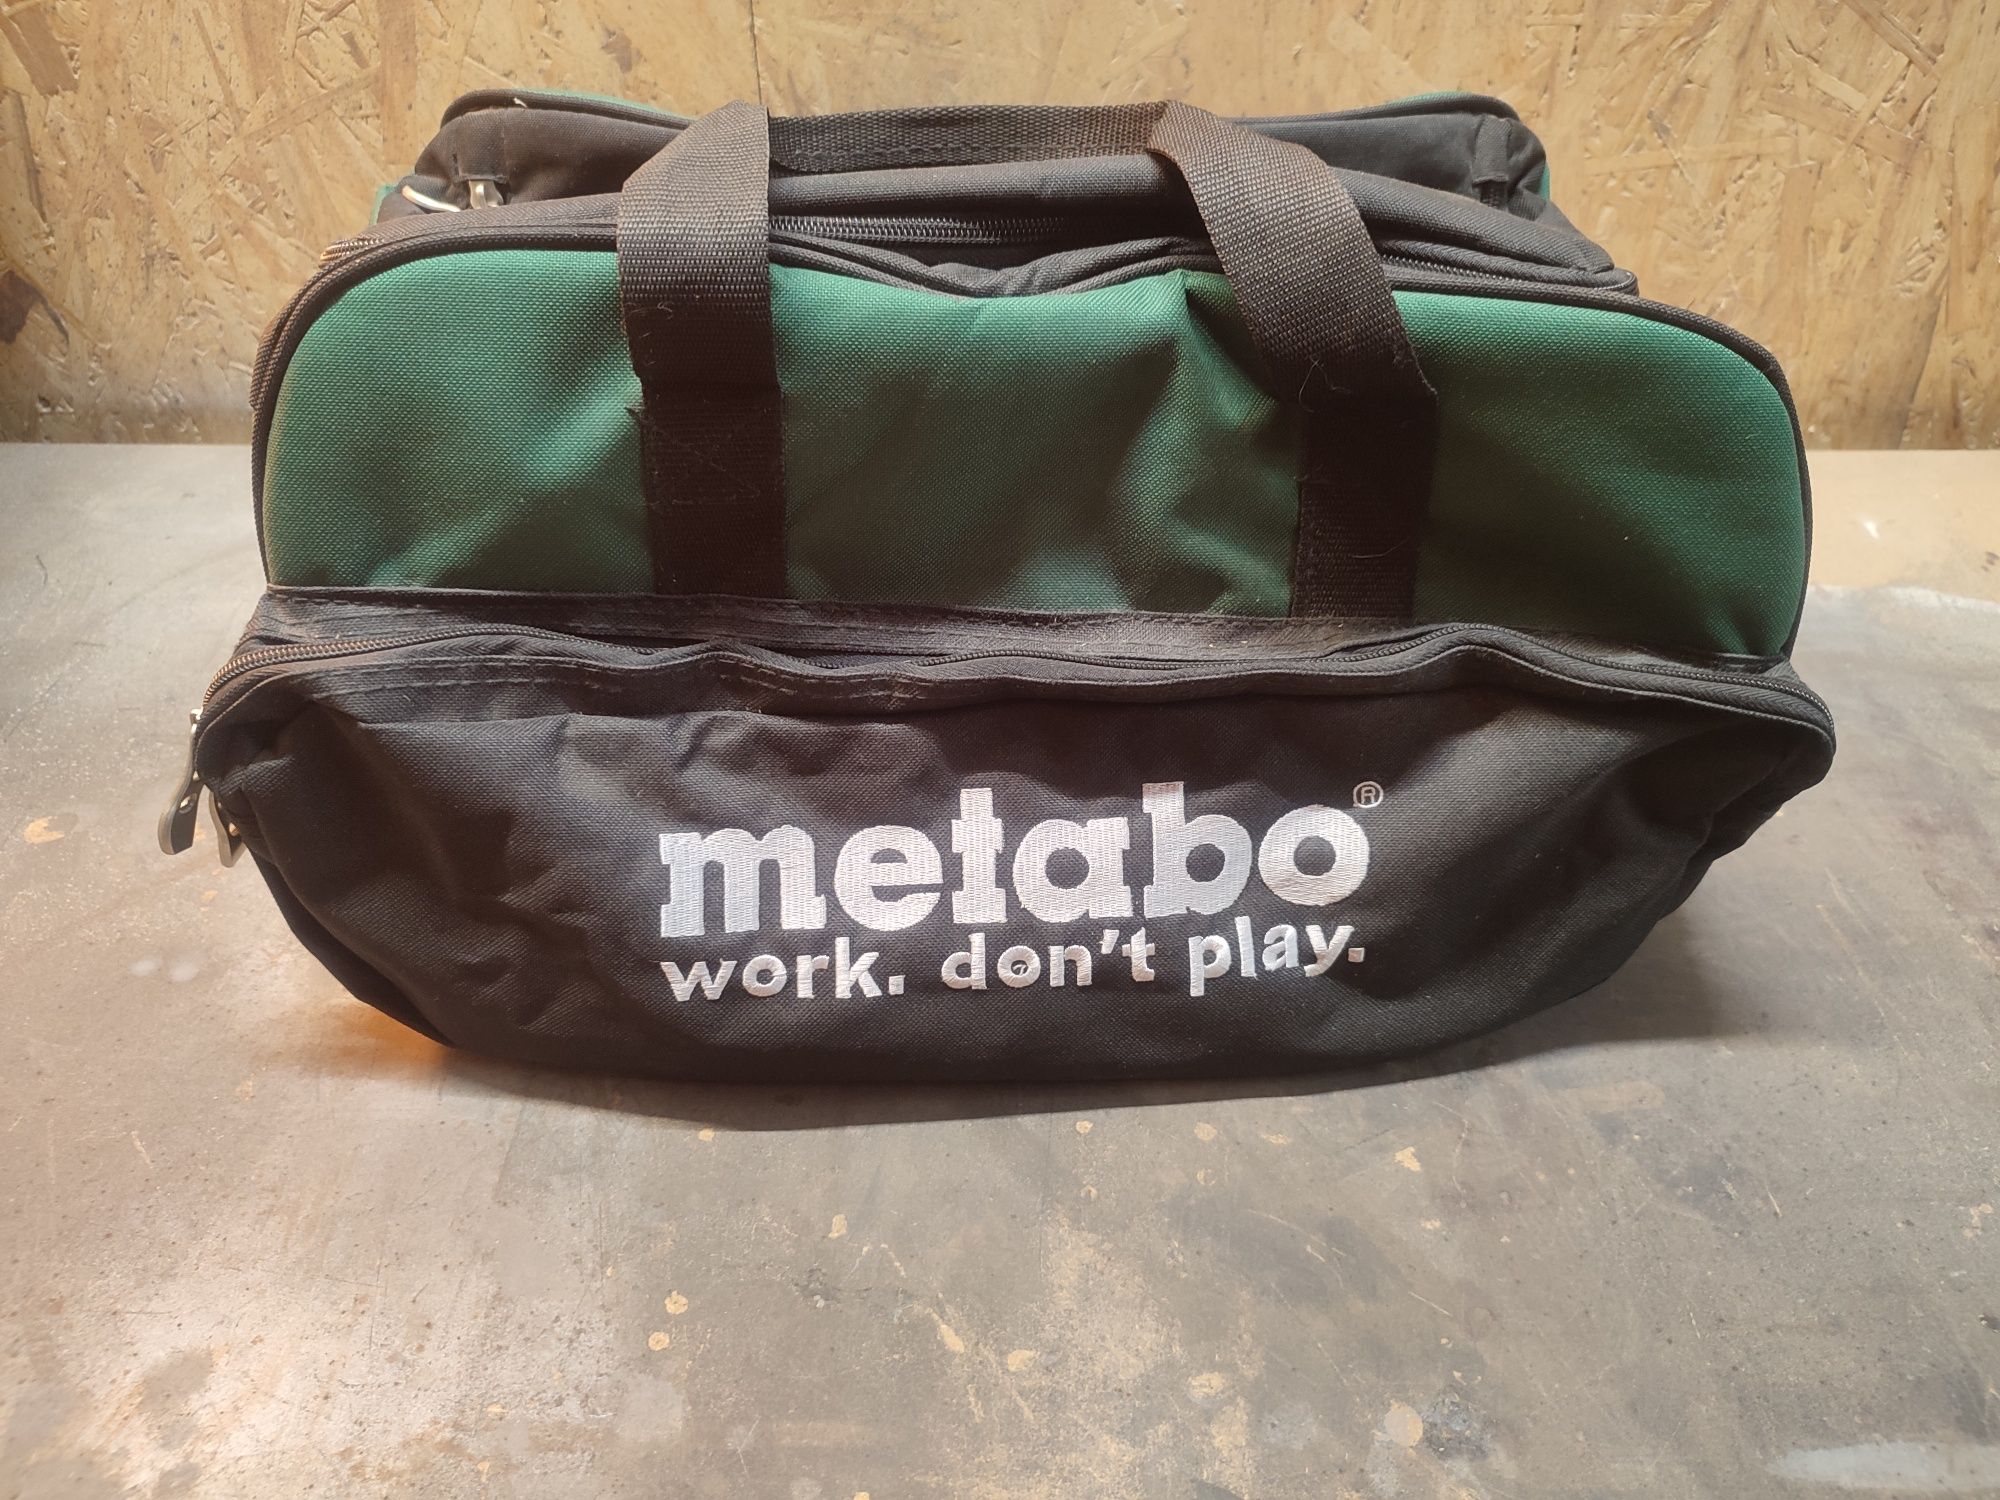 Walizka, walizki, torba Metabo. Nie zniszczone